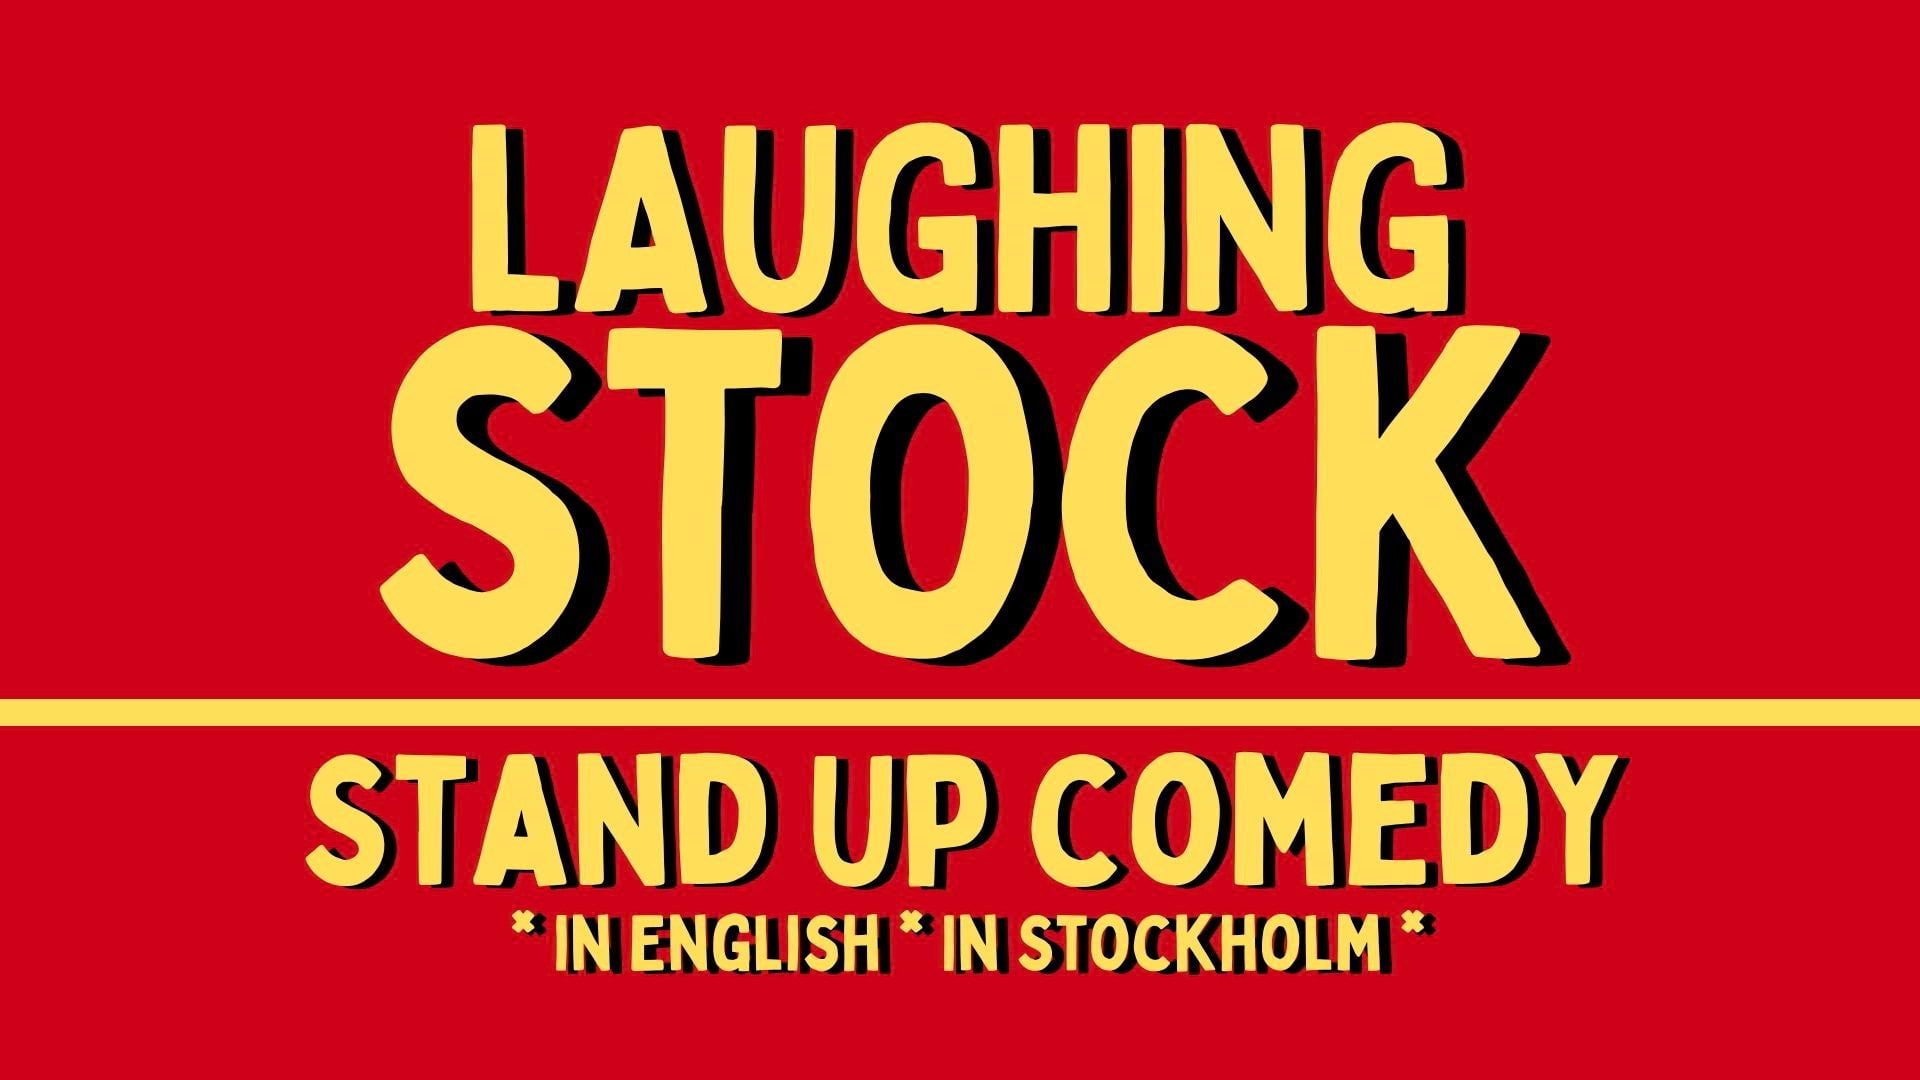 Engelskspråkig standup med Laughing Stock